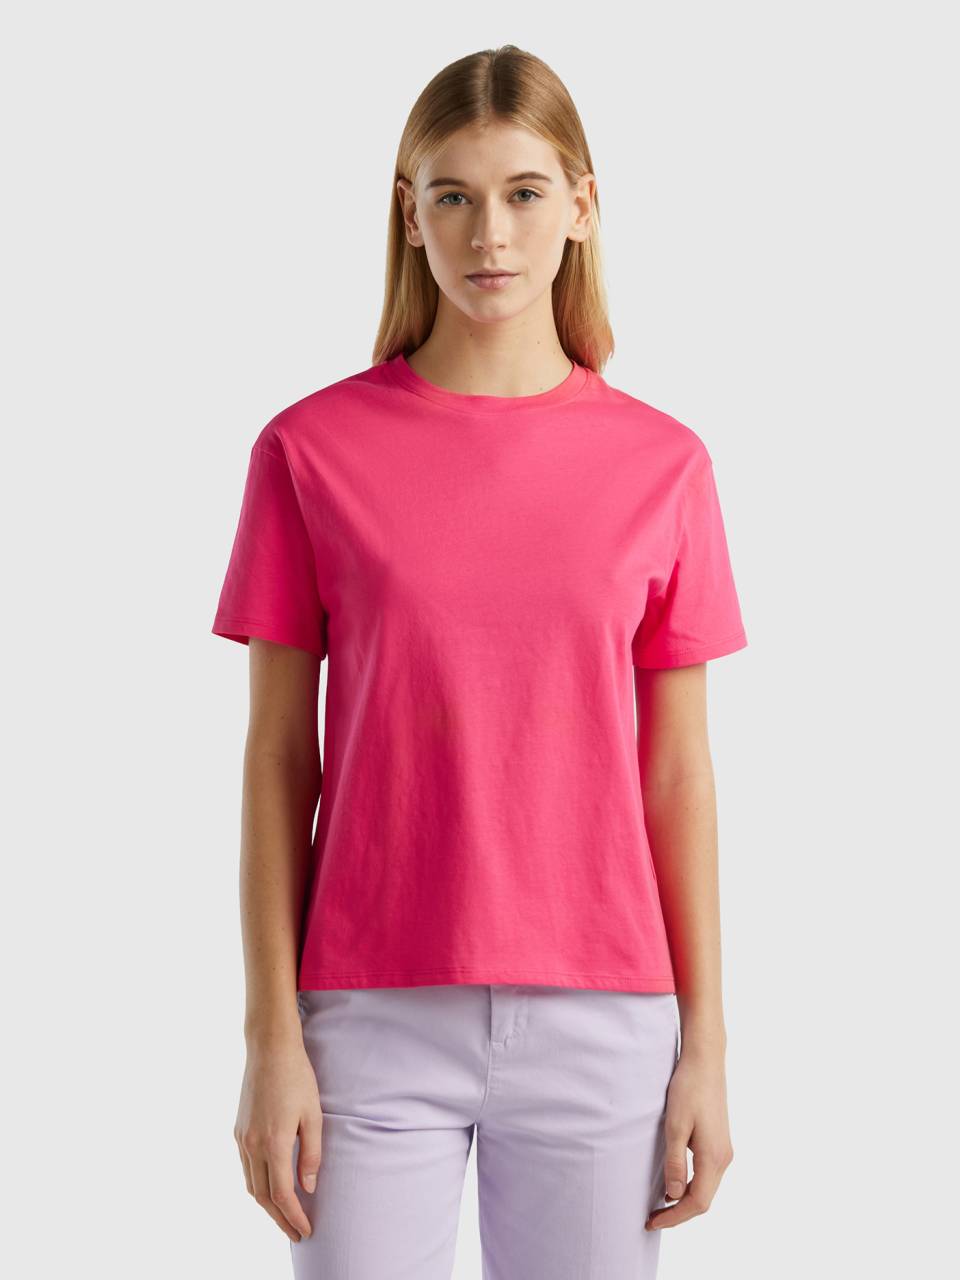 | Fuchsia sleeve Short 100% Benetton t-shirt cotton -